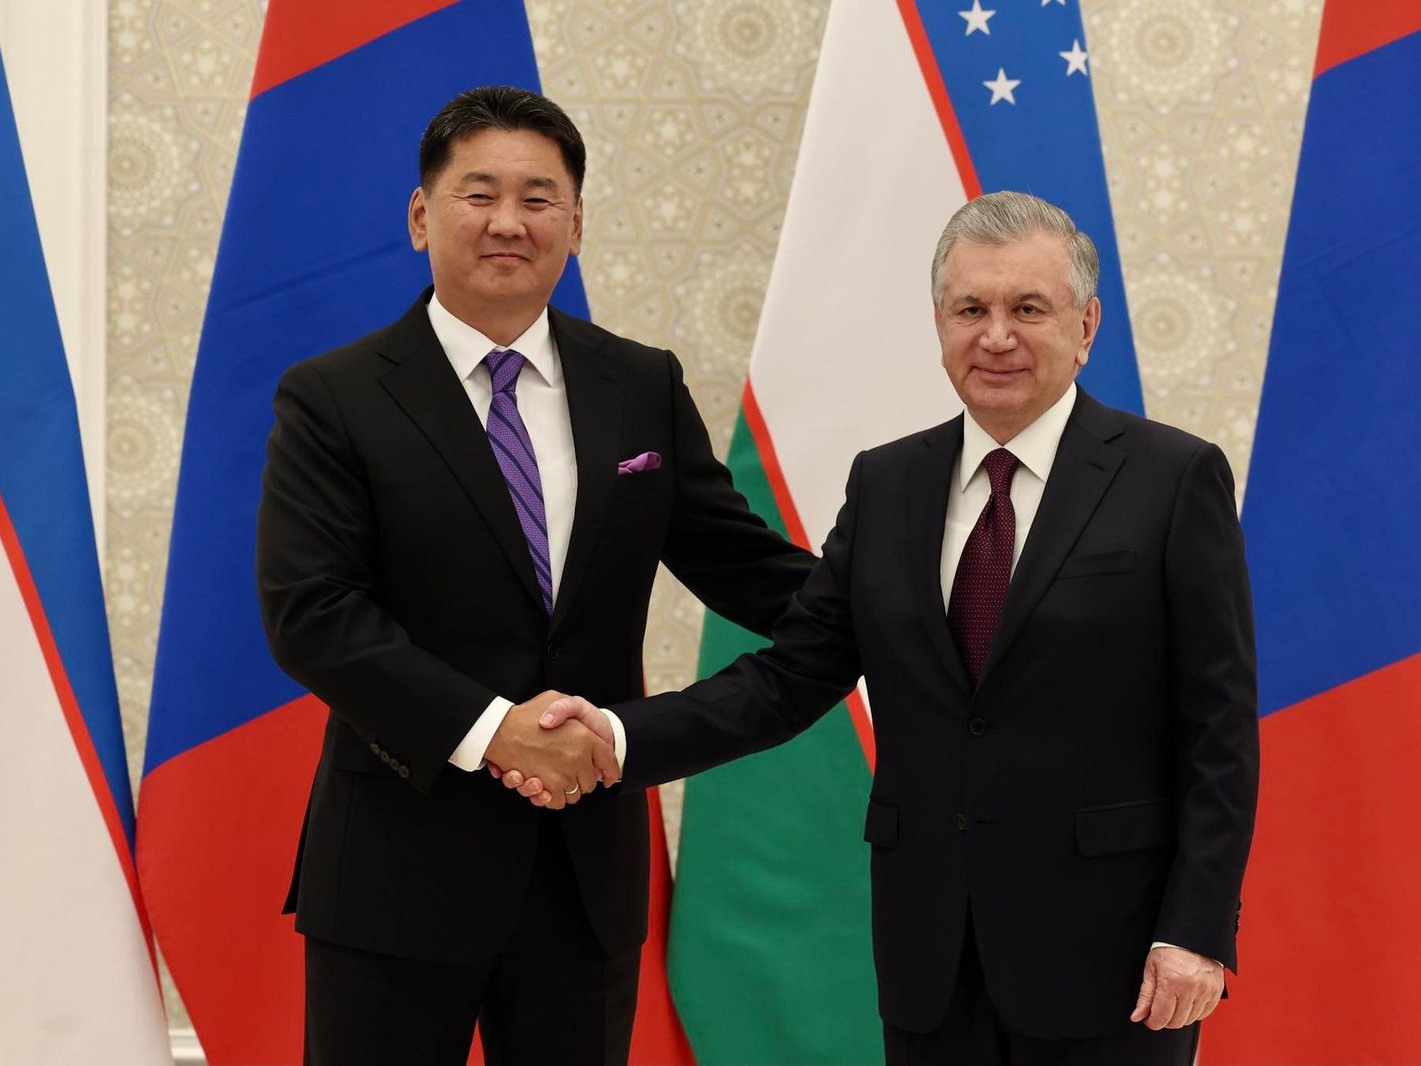 Ерөнхийлөгч У.Хүрэлсүх Узбекистан улсын ерөнхийлөгч Ш.Мирзиёевтэй уулзав